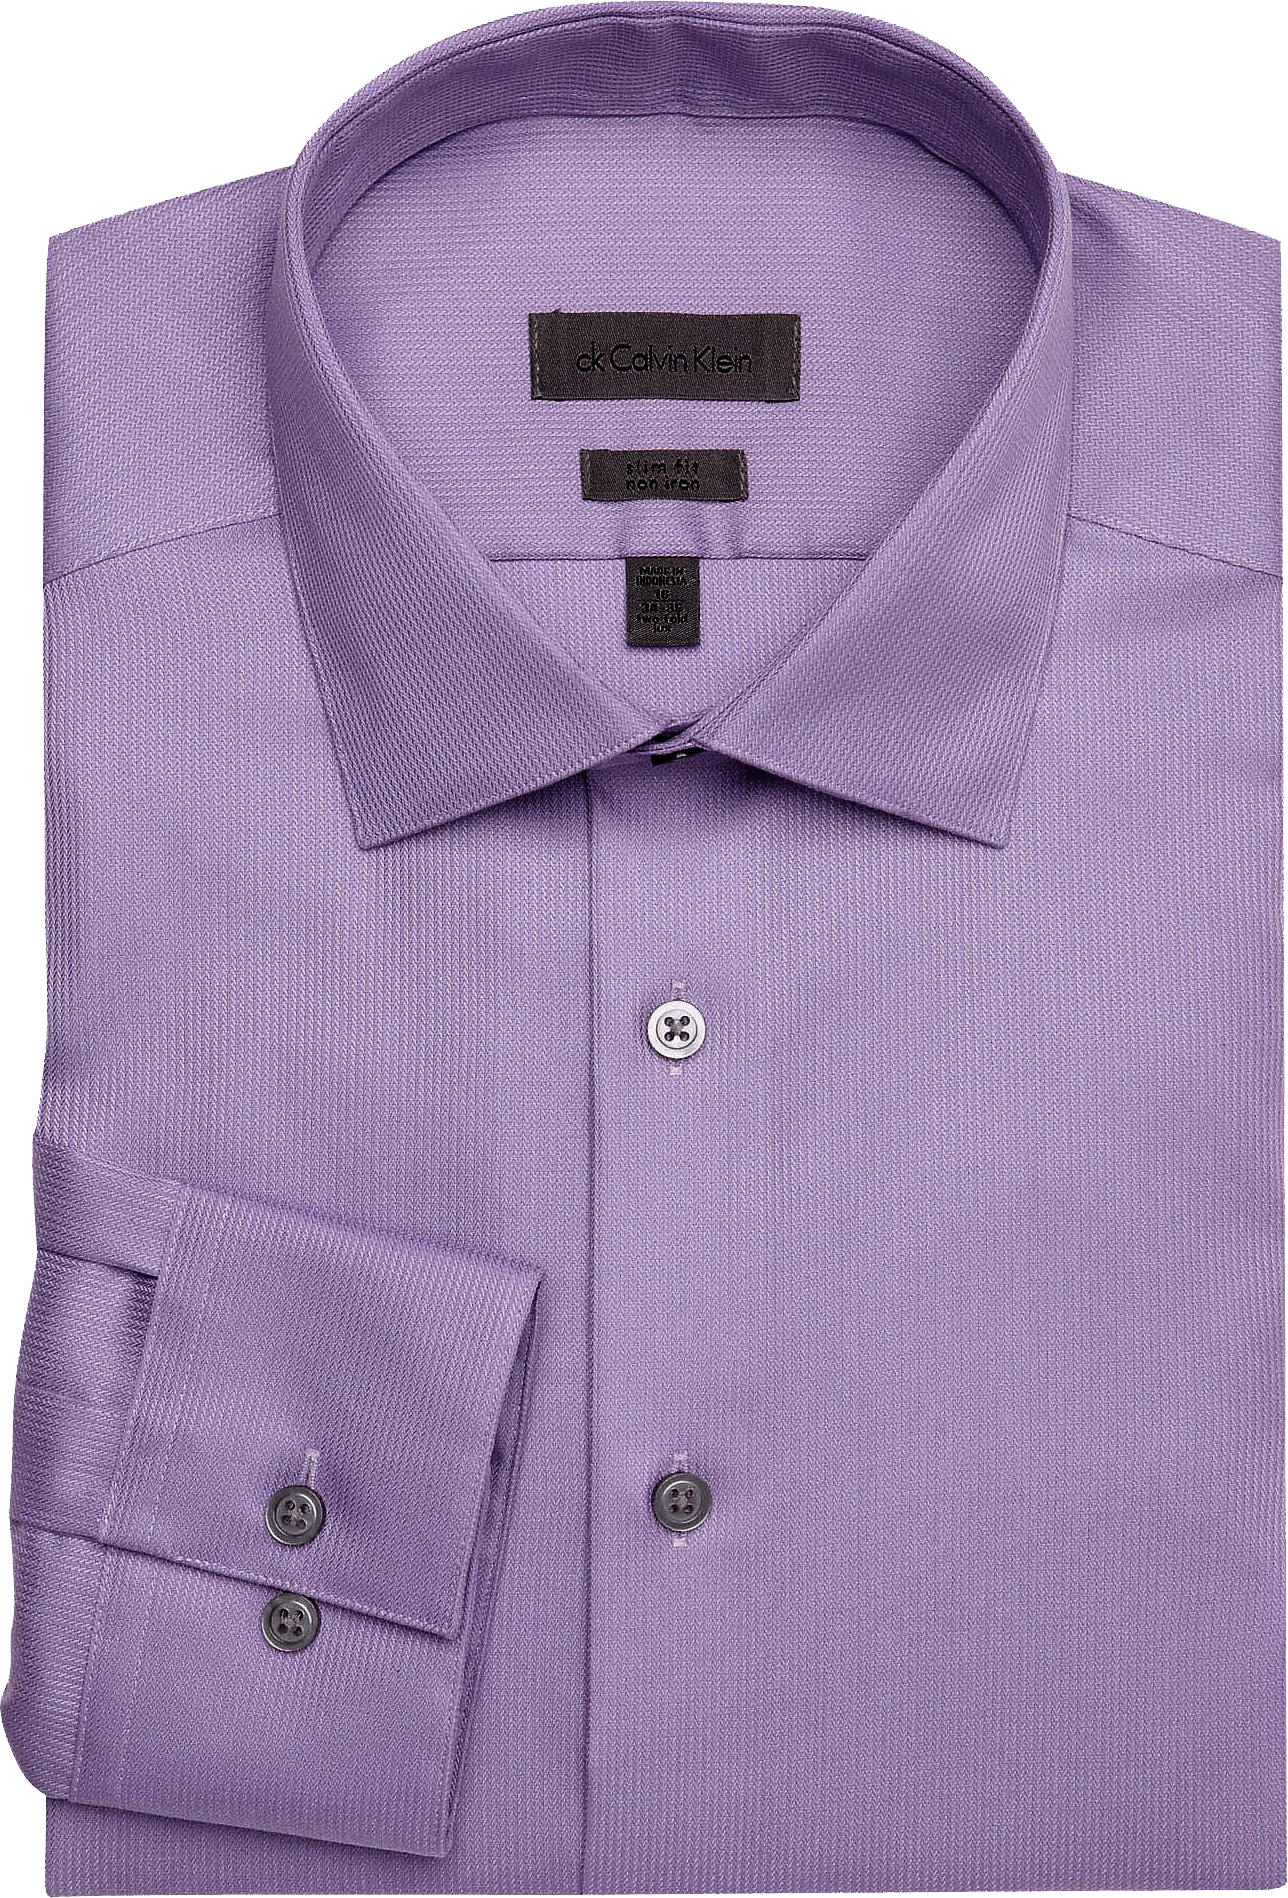 Calvin Klein Lavender Corded Slim Fit Non-Iron Dress Shirt - Men's Sale ...